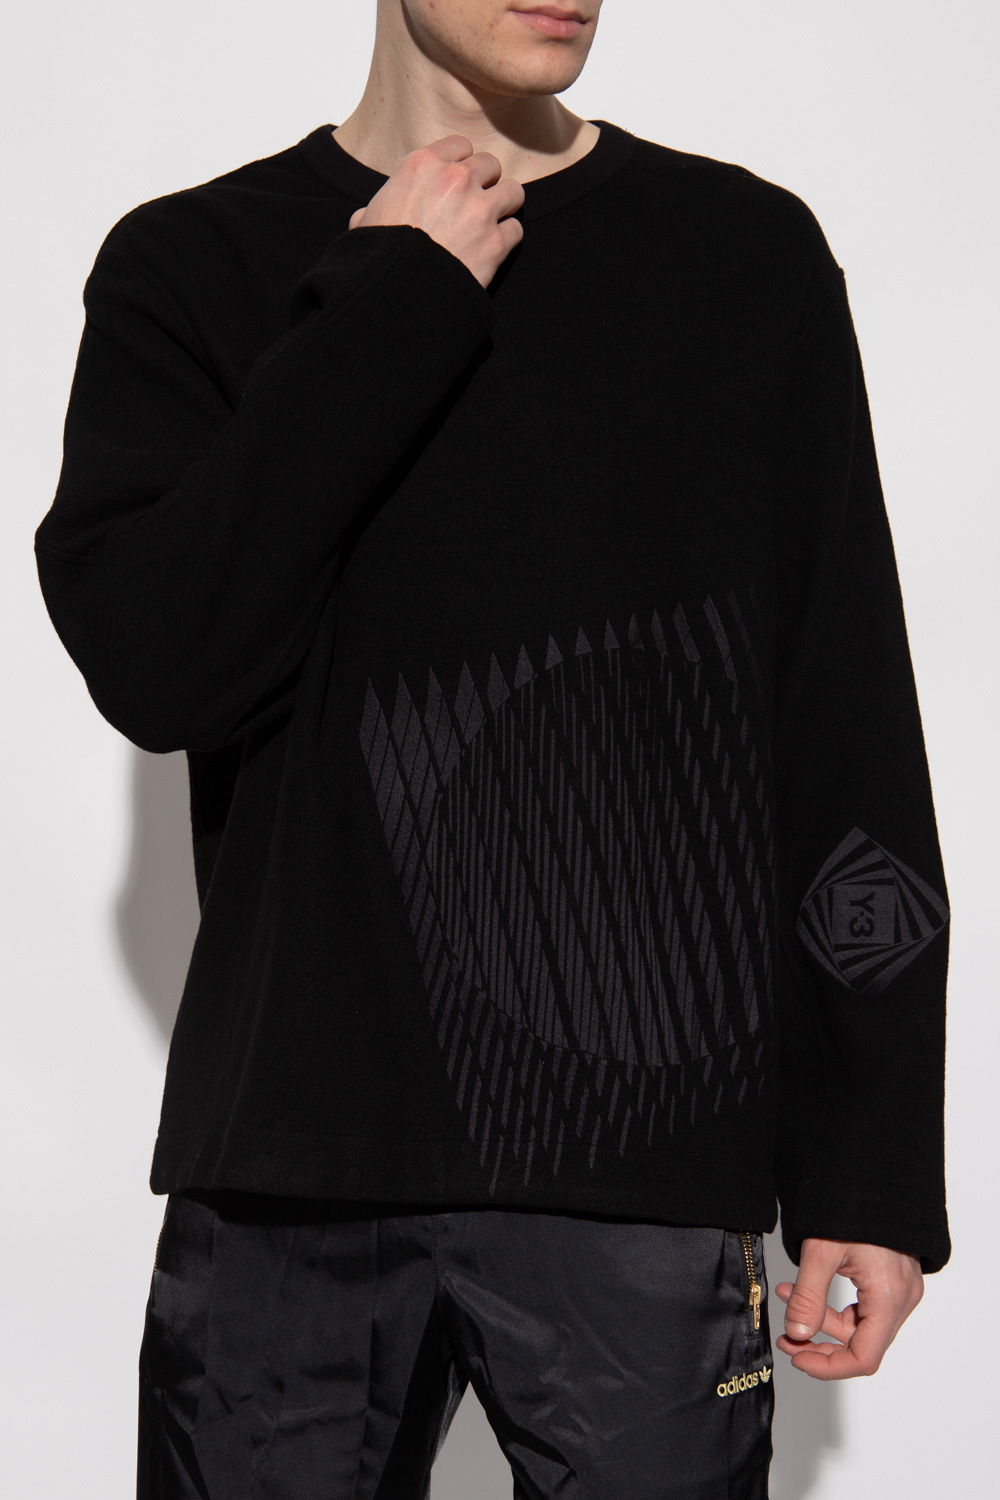 Y-3 Yohji Yamamoto kenzo grey embroidered sweatshirt